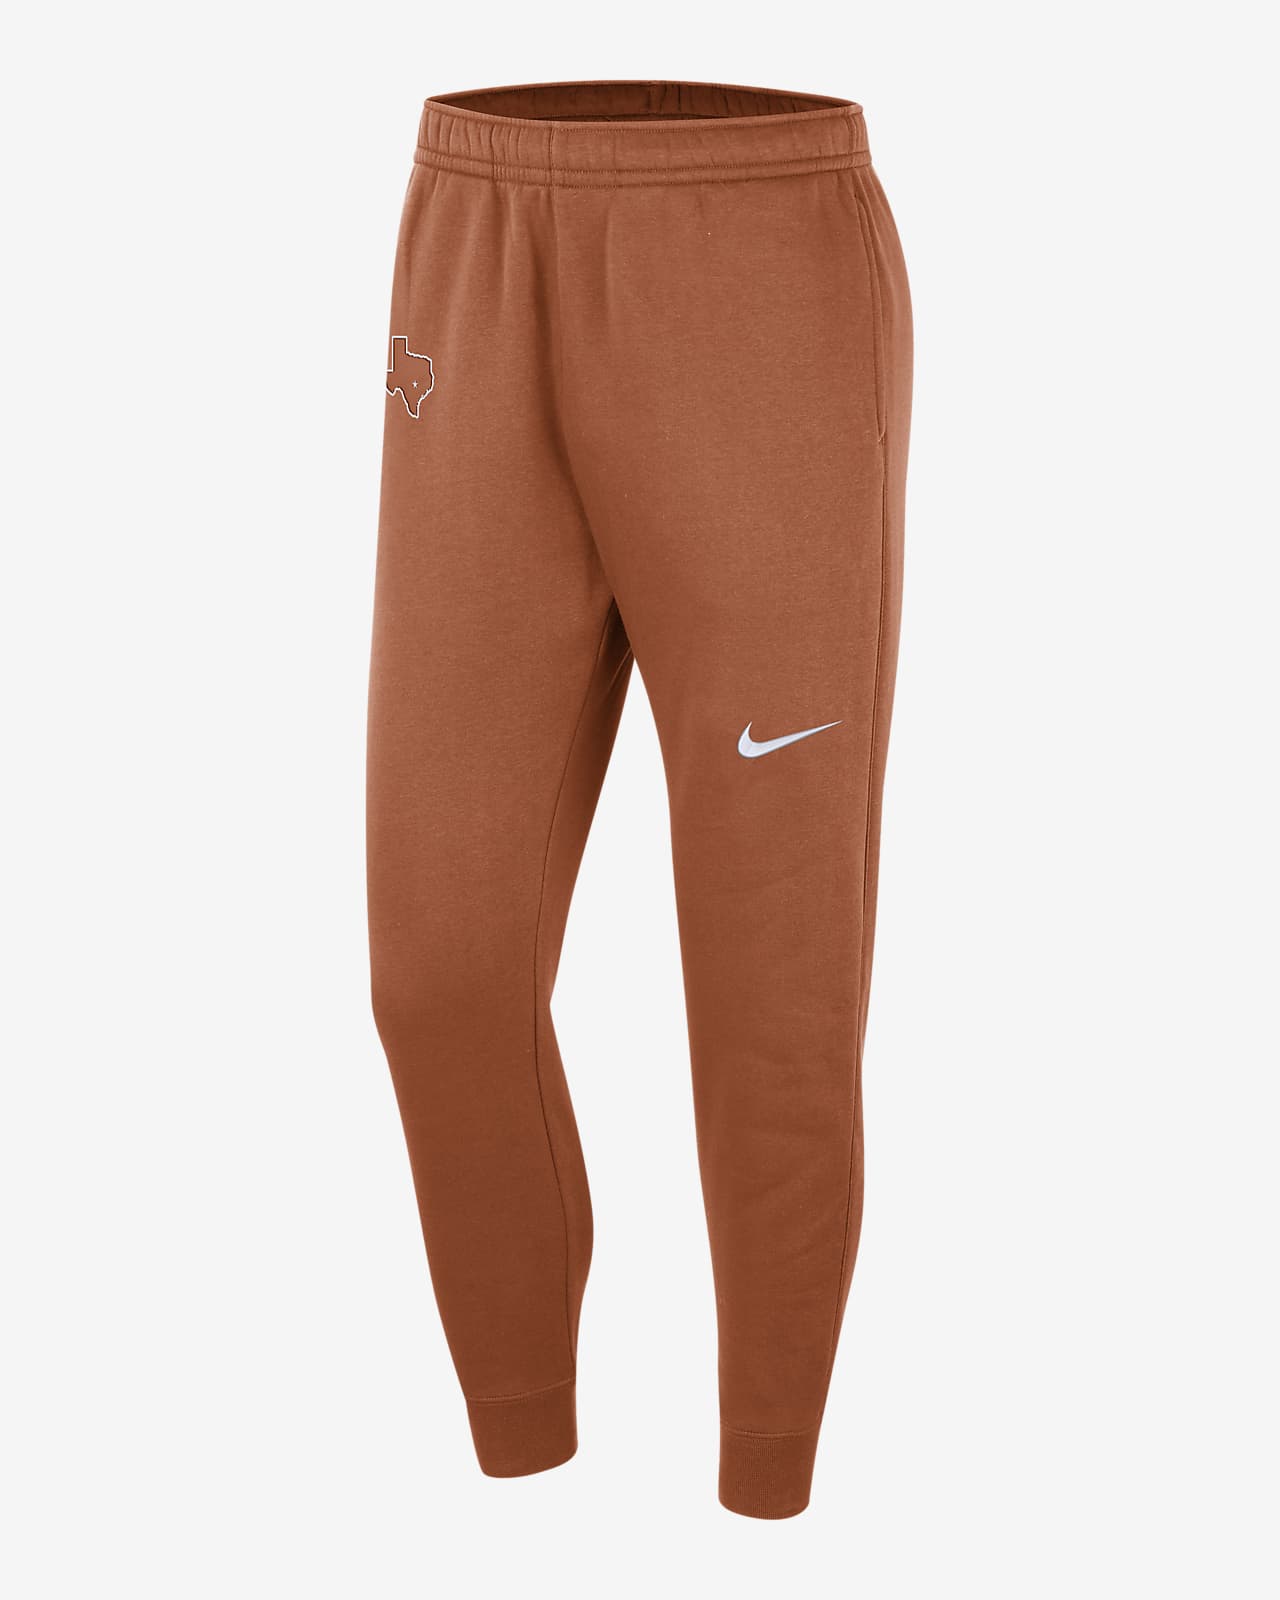 Pants universitarios Nike para hombre Texas Club Fleece